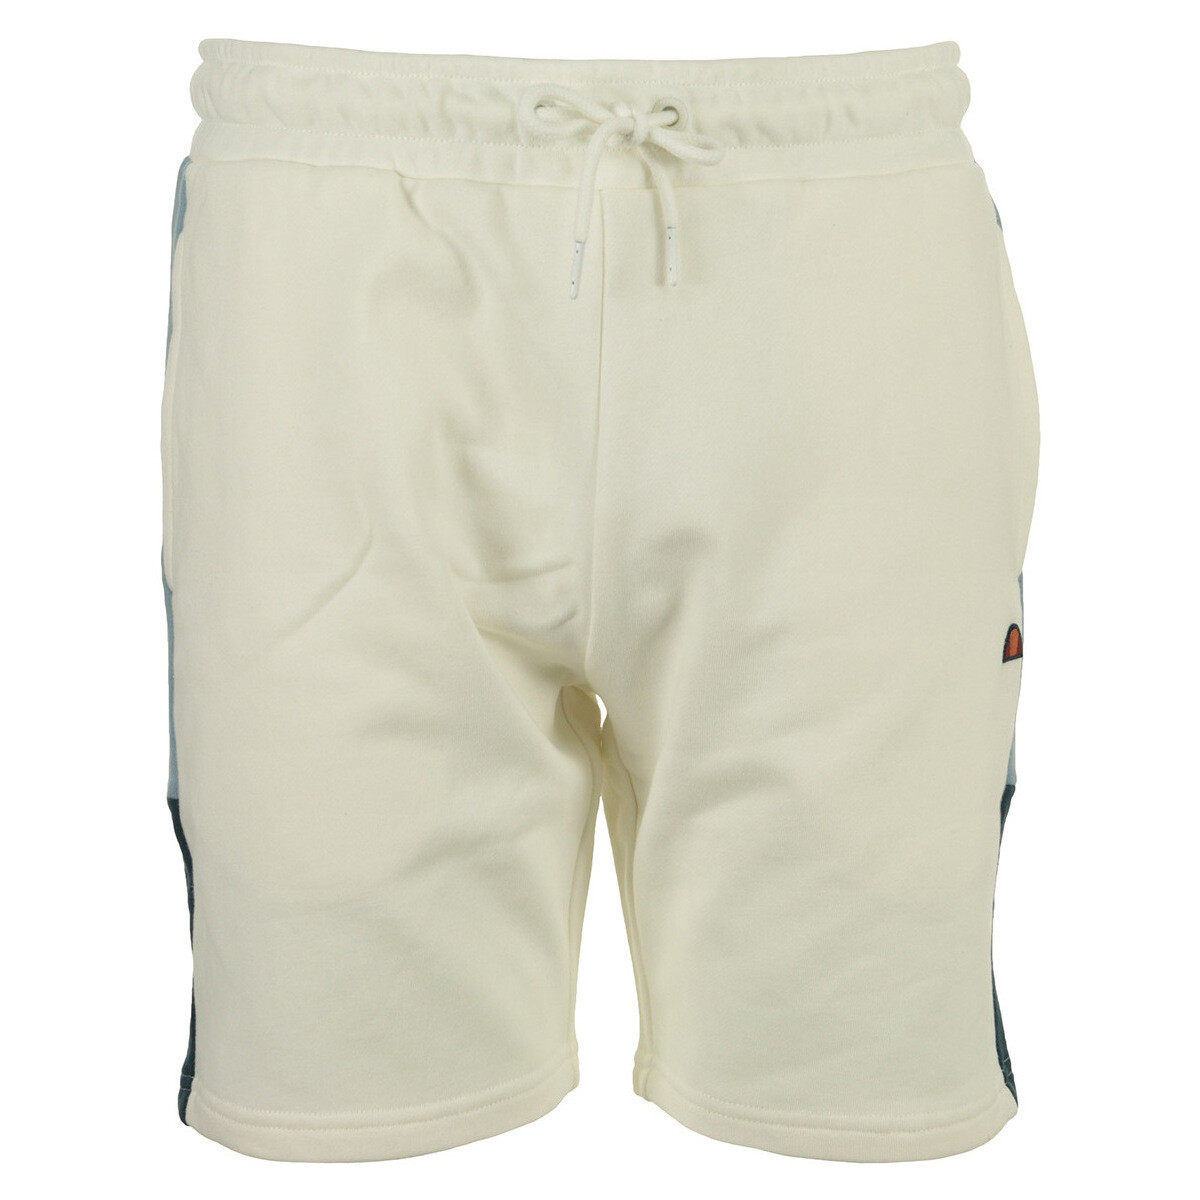 Textil Homem Shorts / Bermudas Ellesse Turi Short Branco